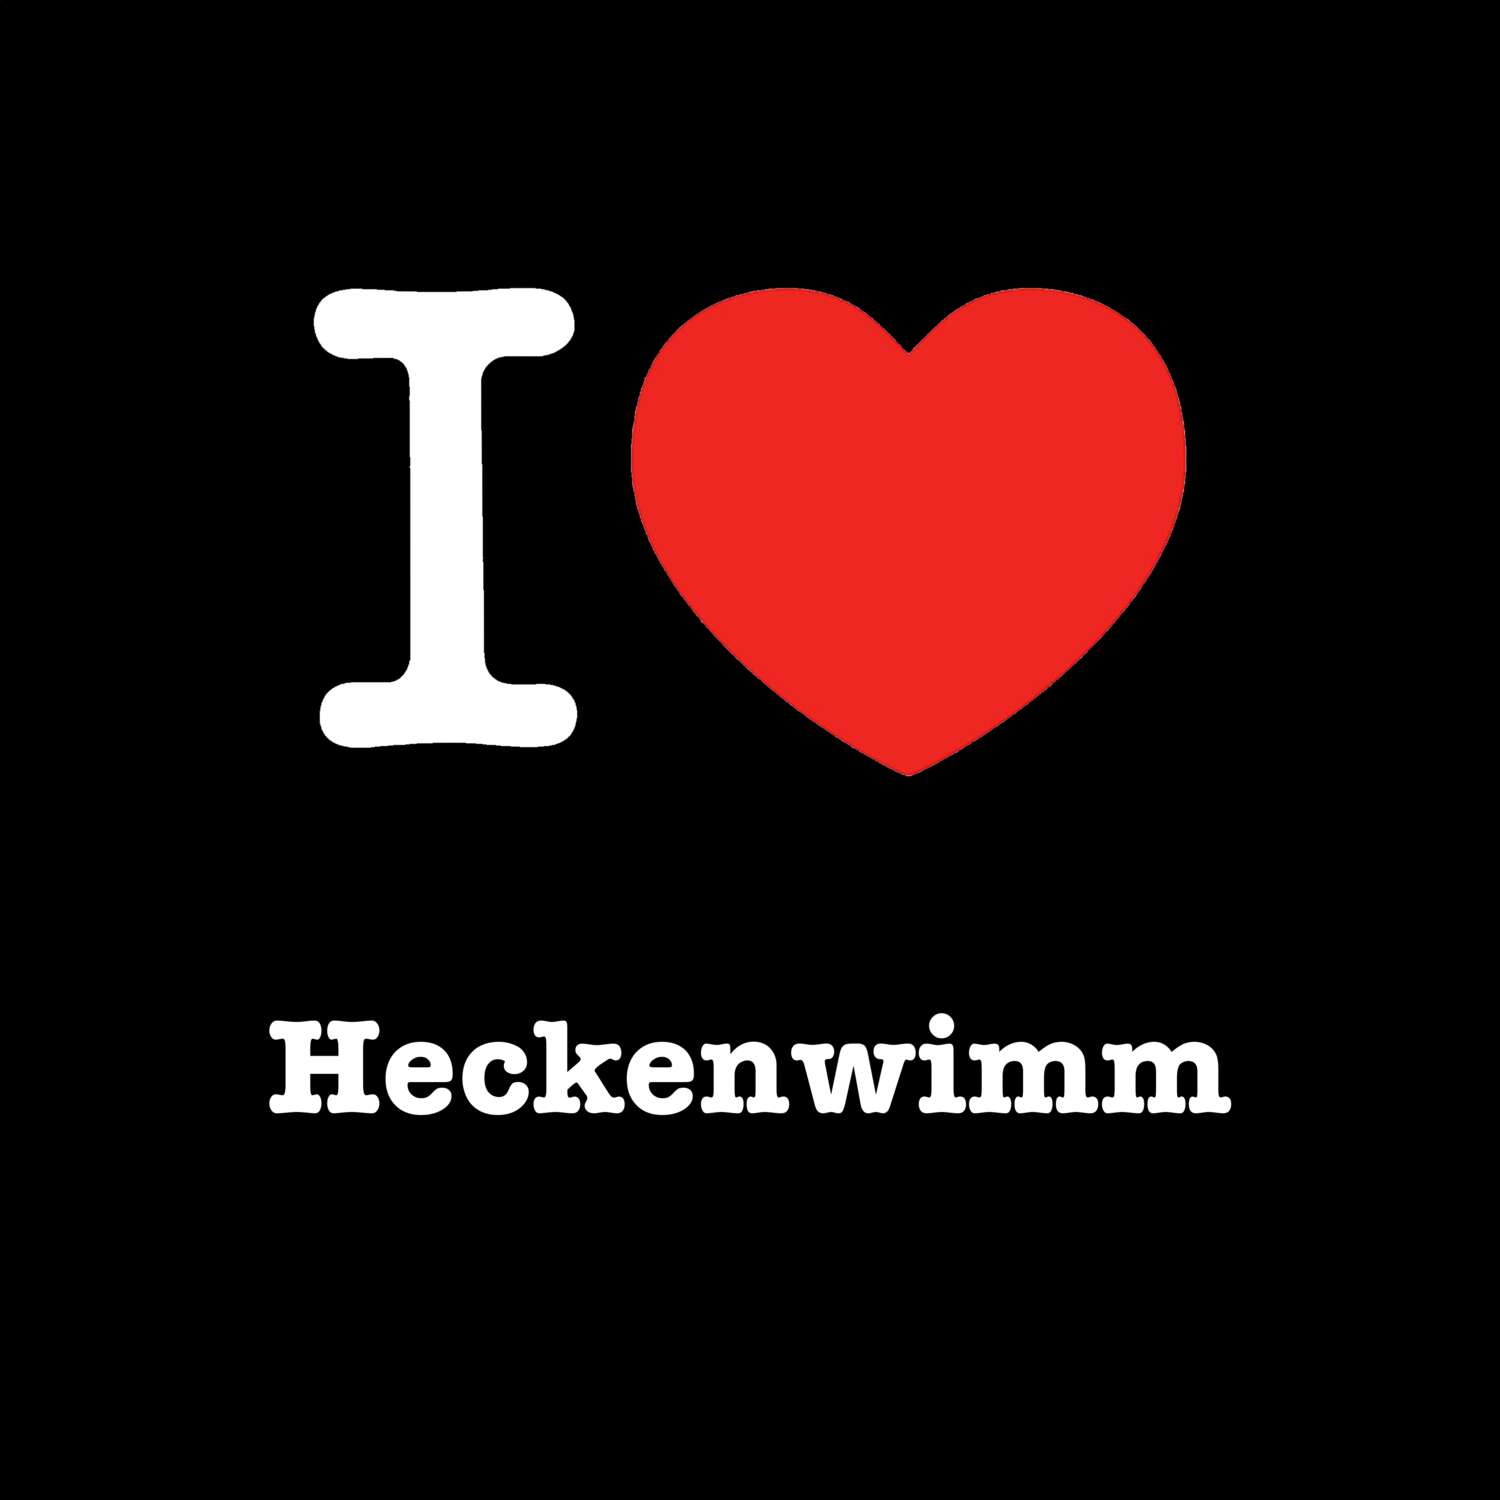 Heckenwimm T-Shirt »I love«